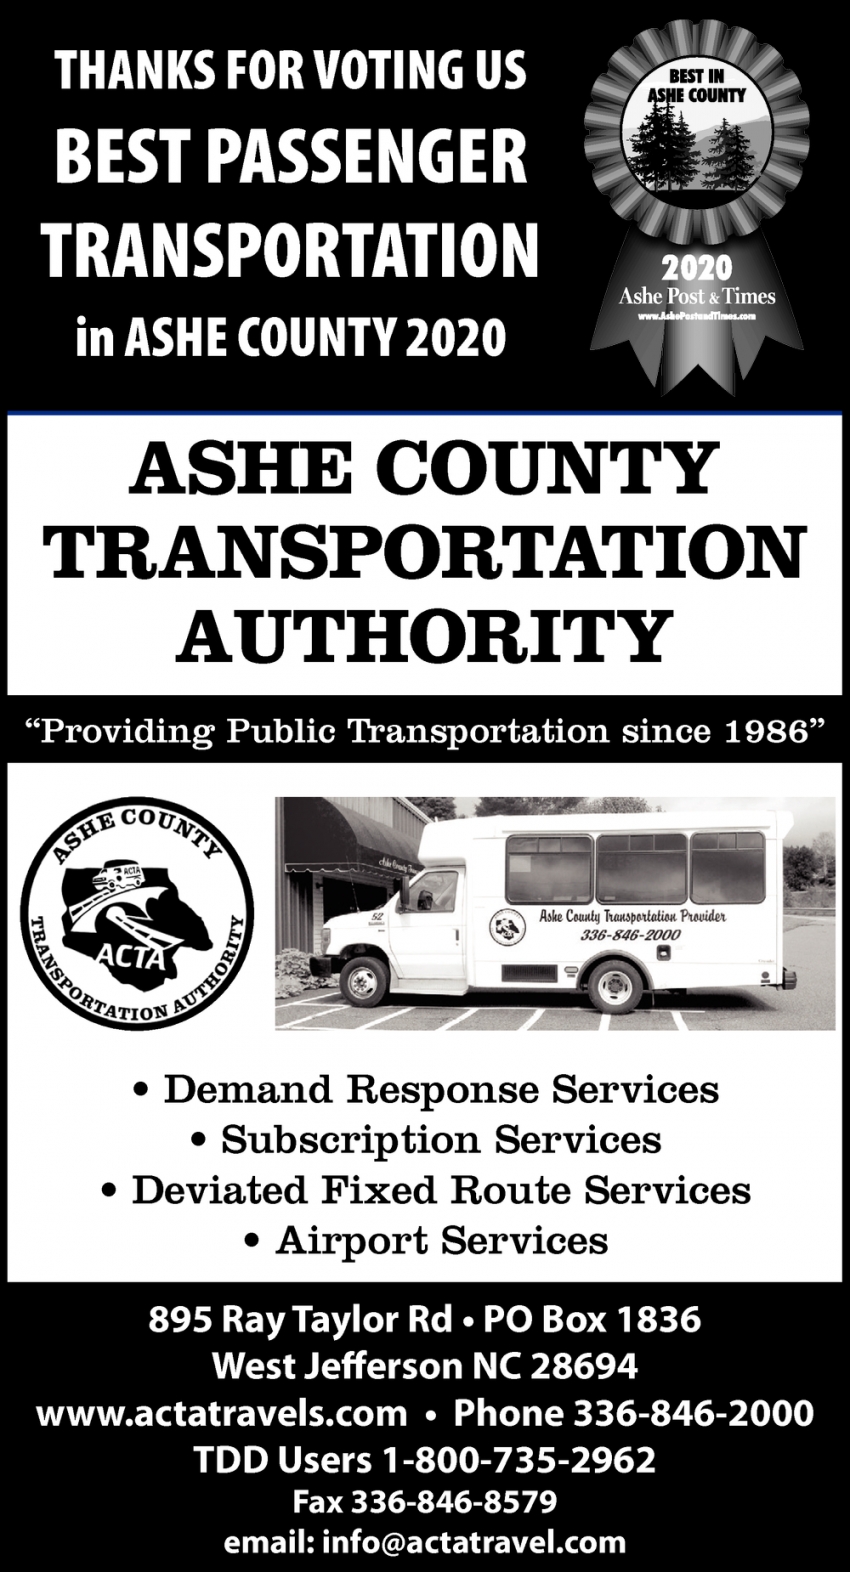 Thanks for Voting Us Best Passenger Transportation in Ashe County 2020